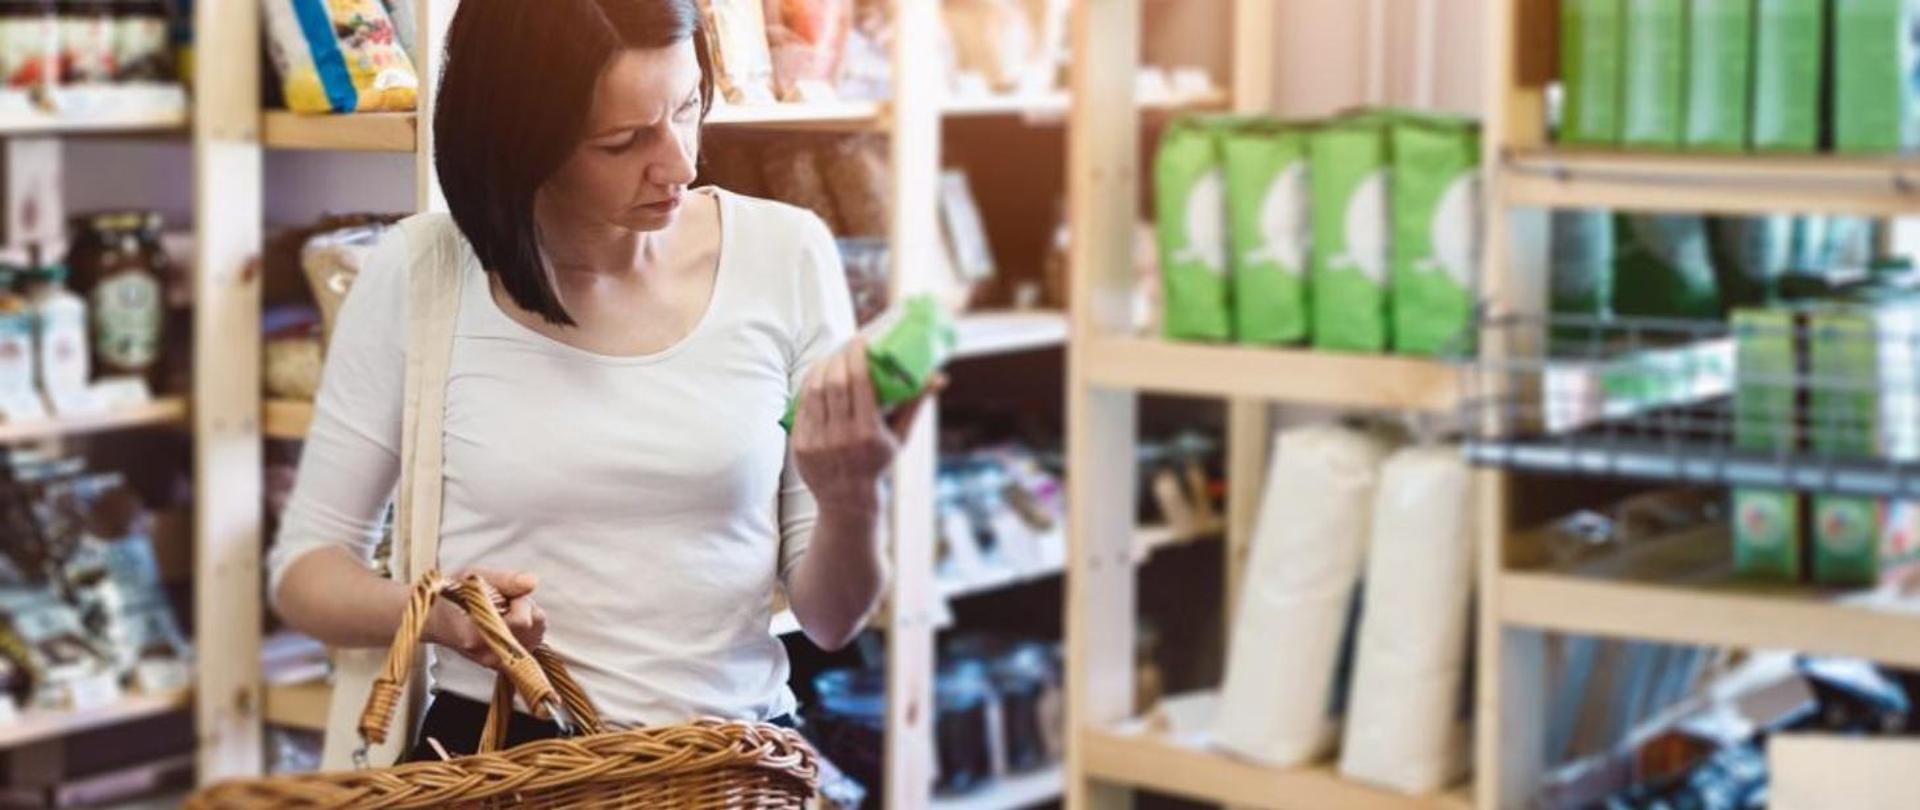 na zdjęciu kobieta z wiklinowym koszykiem w sklepie ogląda produkt żywnościowy